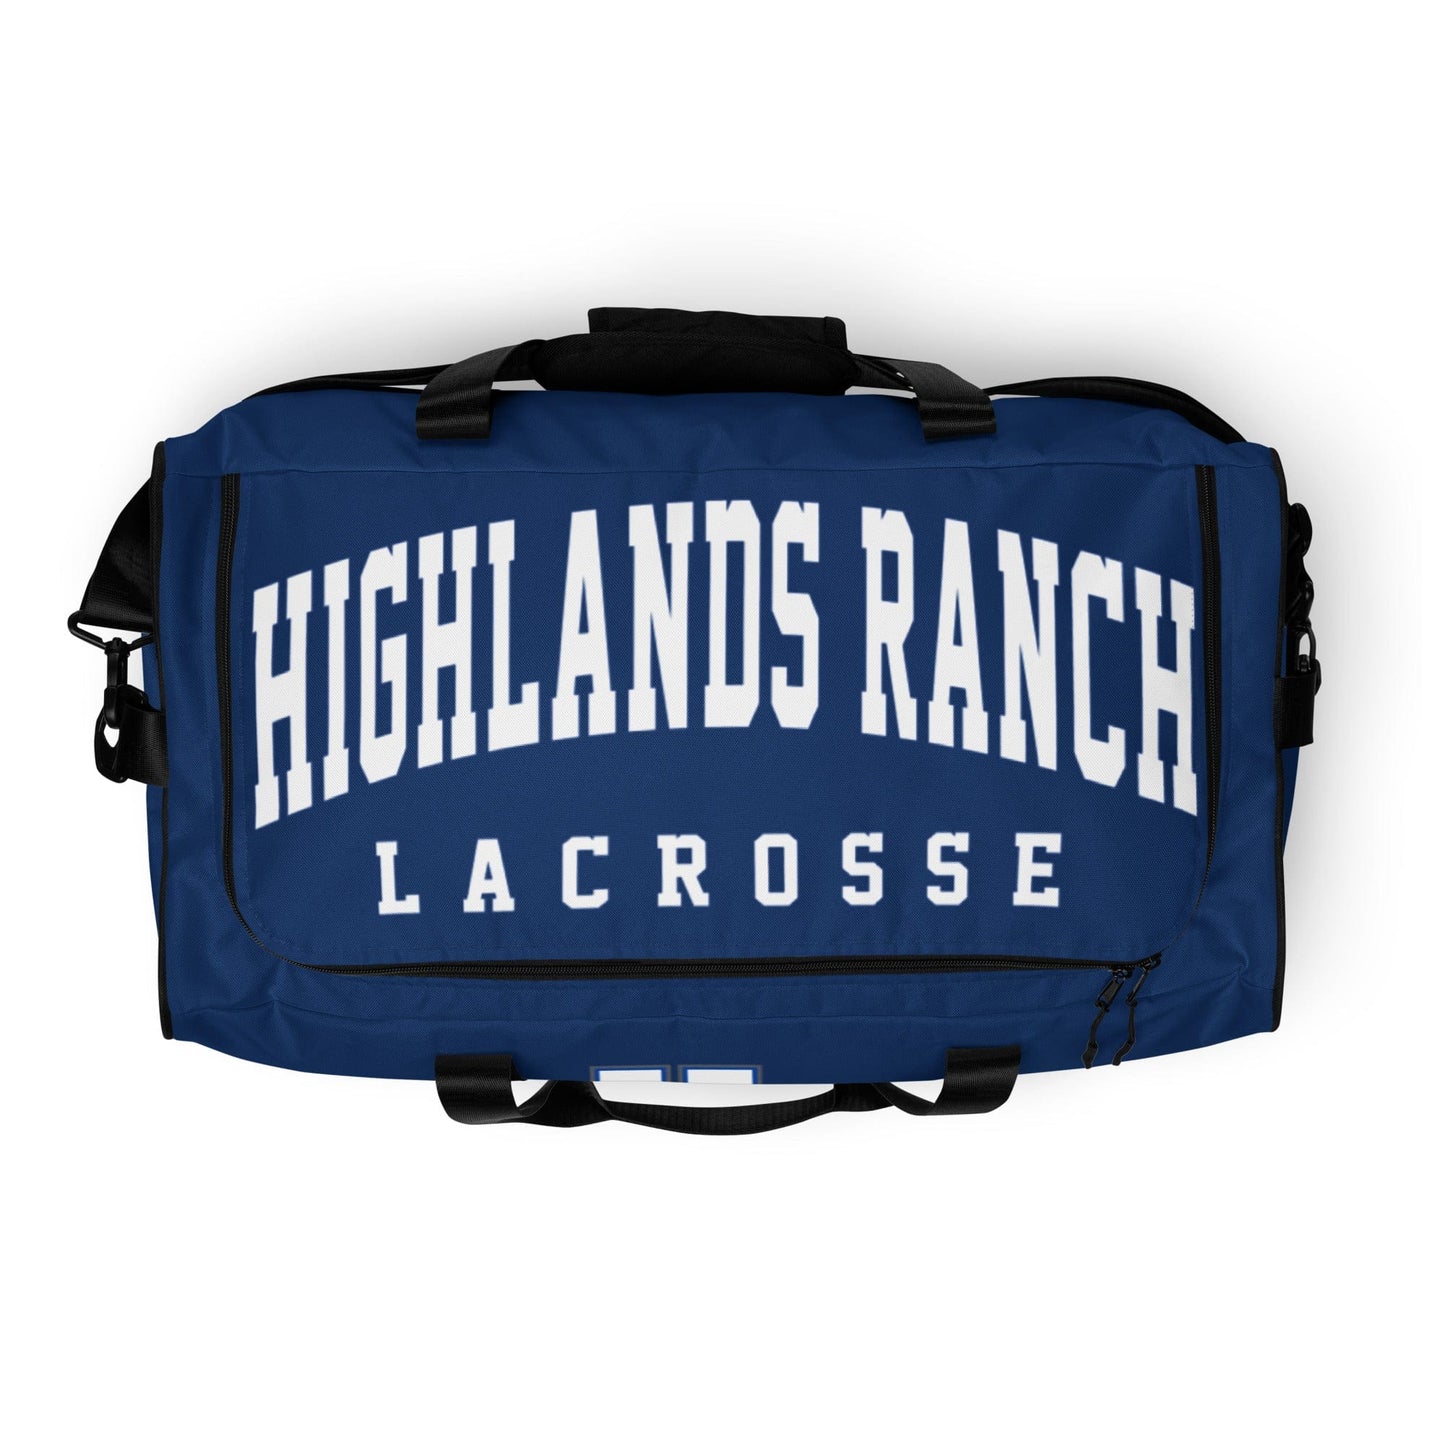 Highlands Ranch Lacrosse Sideline Bag Signature Lacrosse